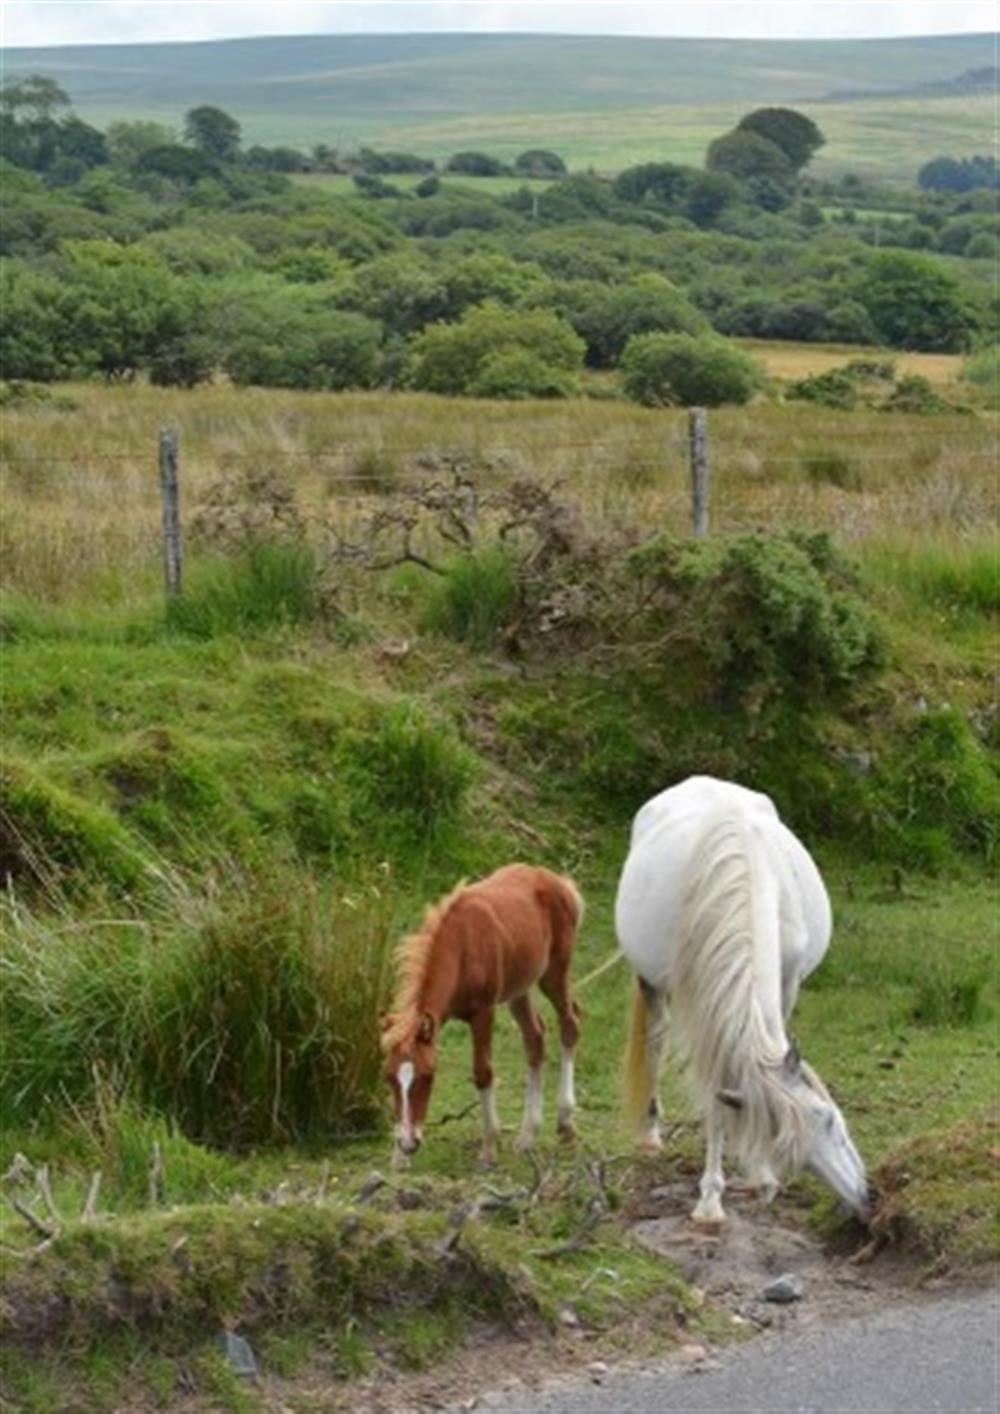 More Dartmoor ponies.